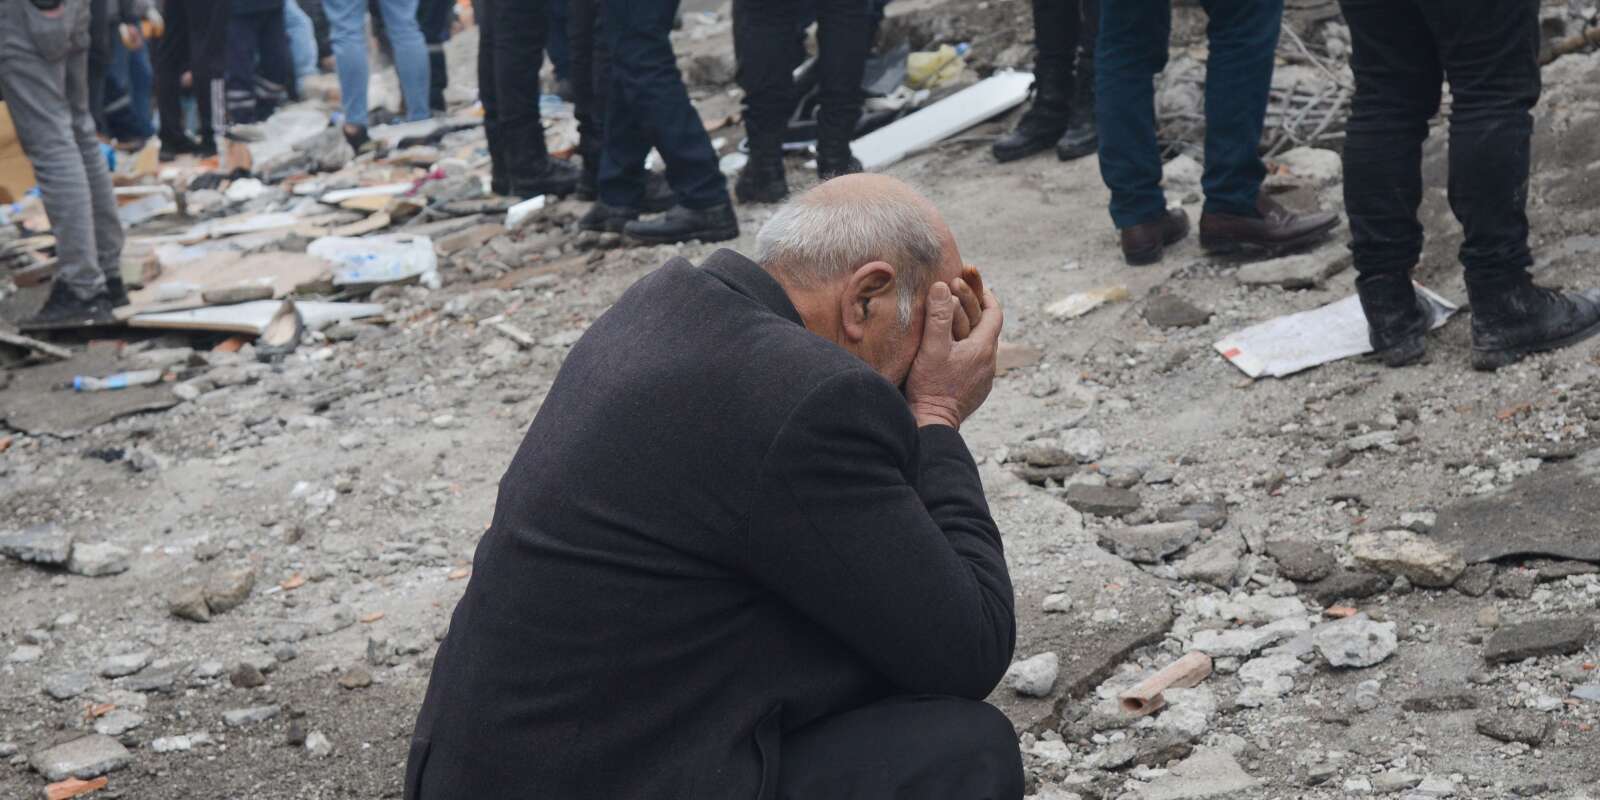 Un homme est pris par l’émotion alors que les membres de la protection civile recherchent des éventuels survivants dans les décombres, à Diyarbakir, le 6 février 2023.